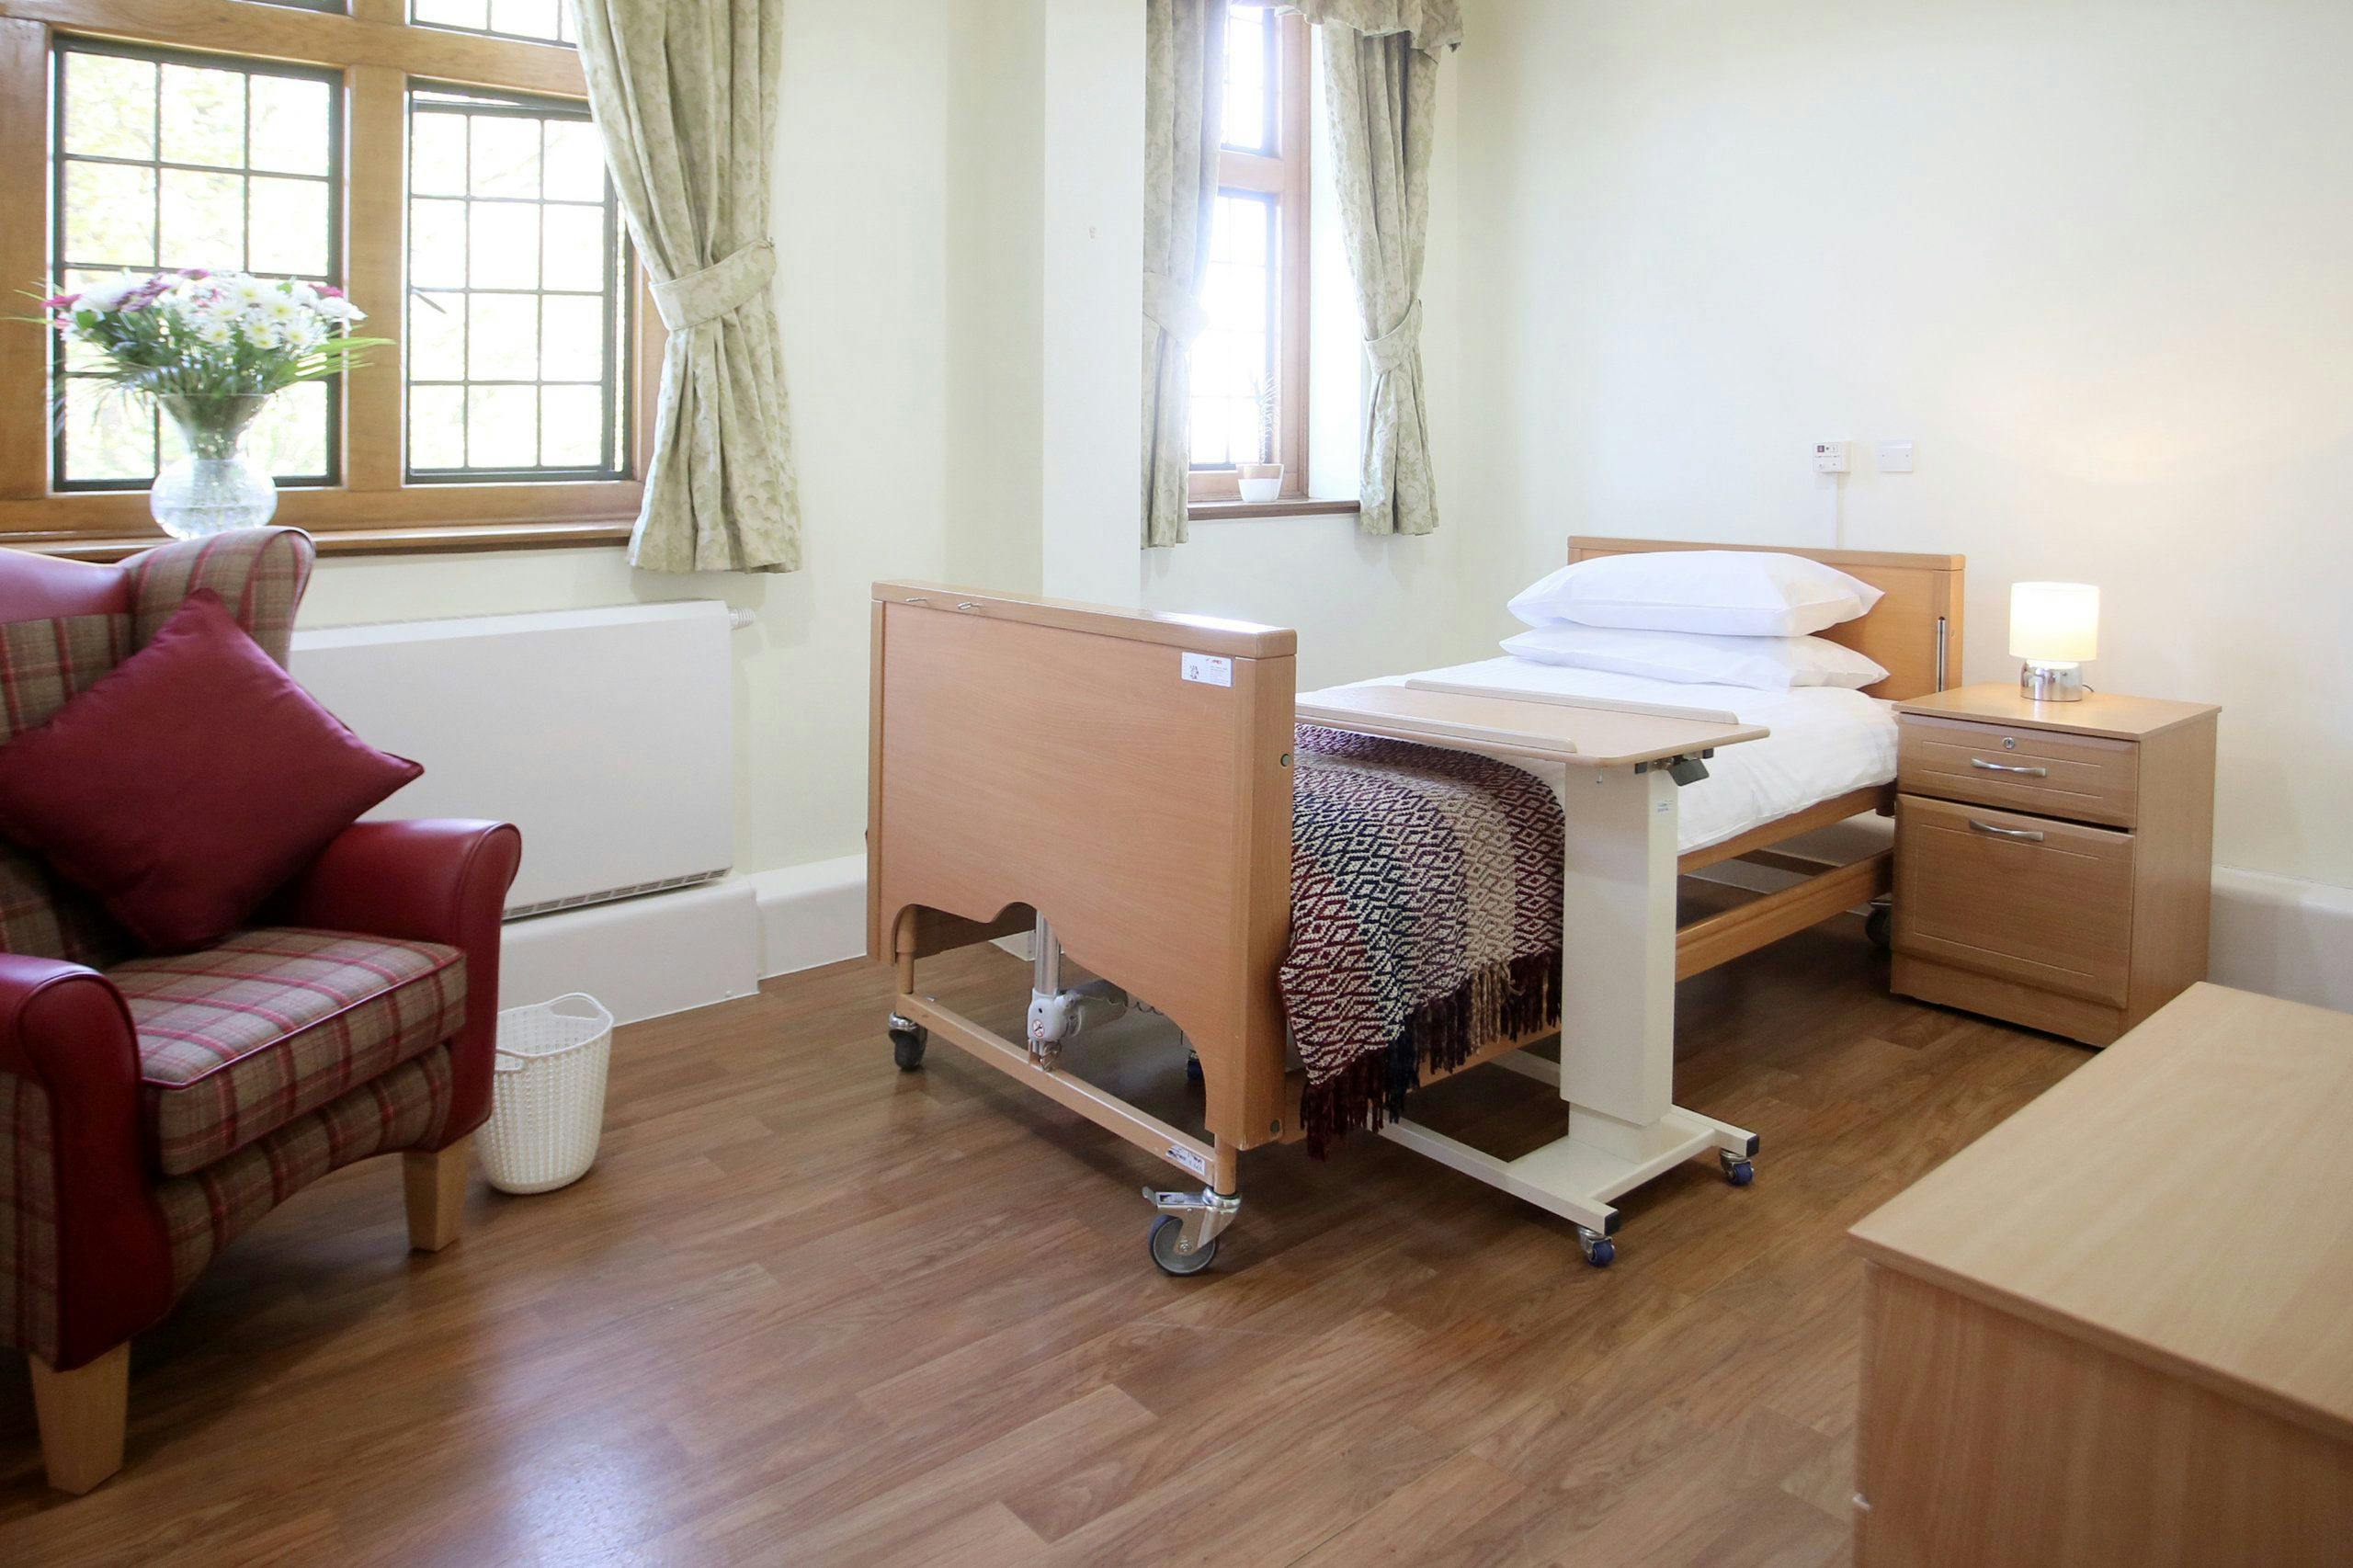 Bedroom at Glebelands Care Home, Wokingham, Berkshire